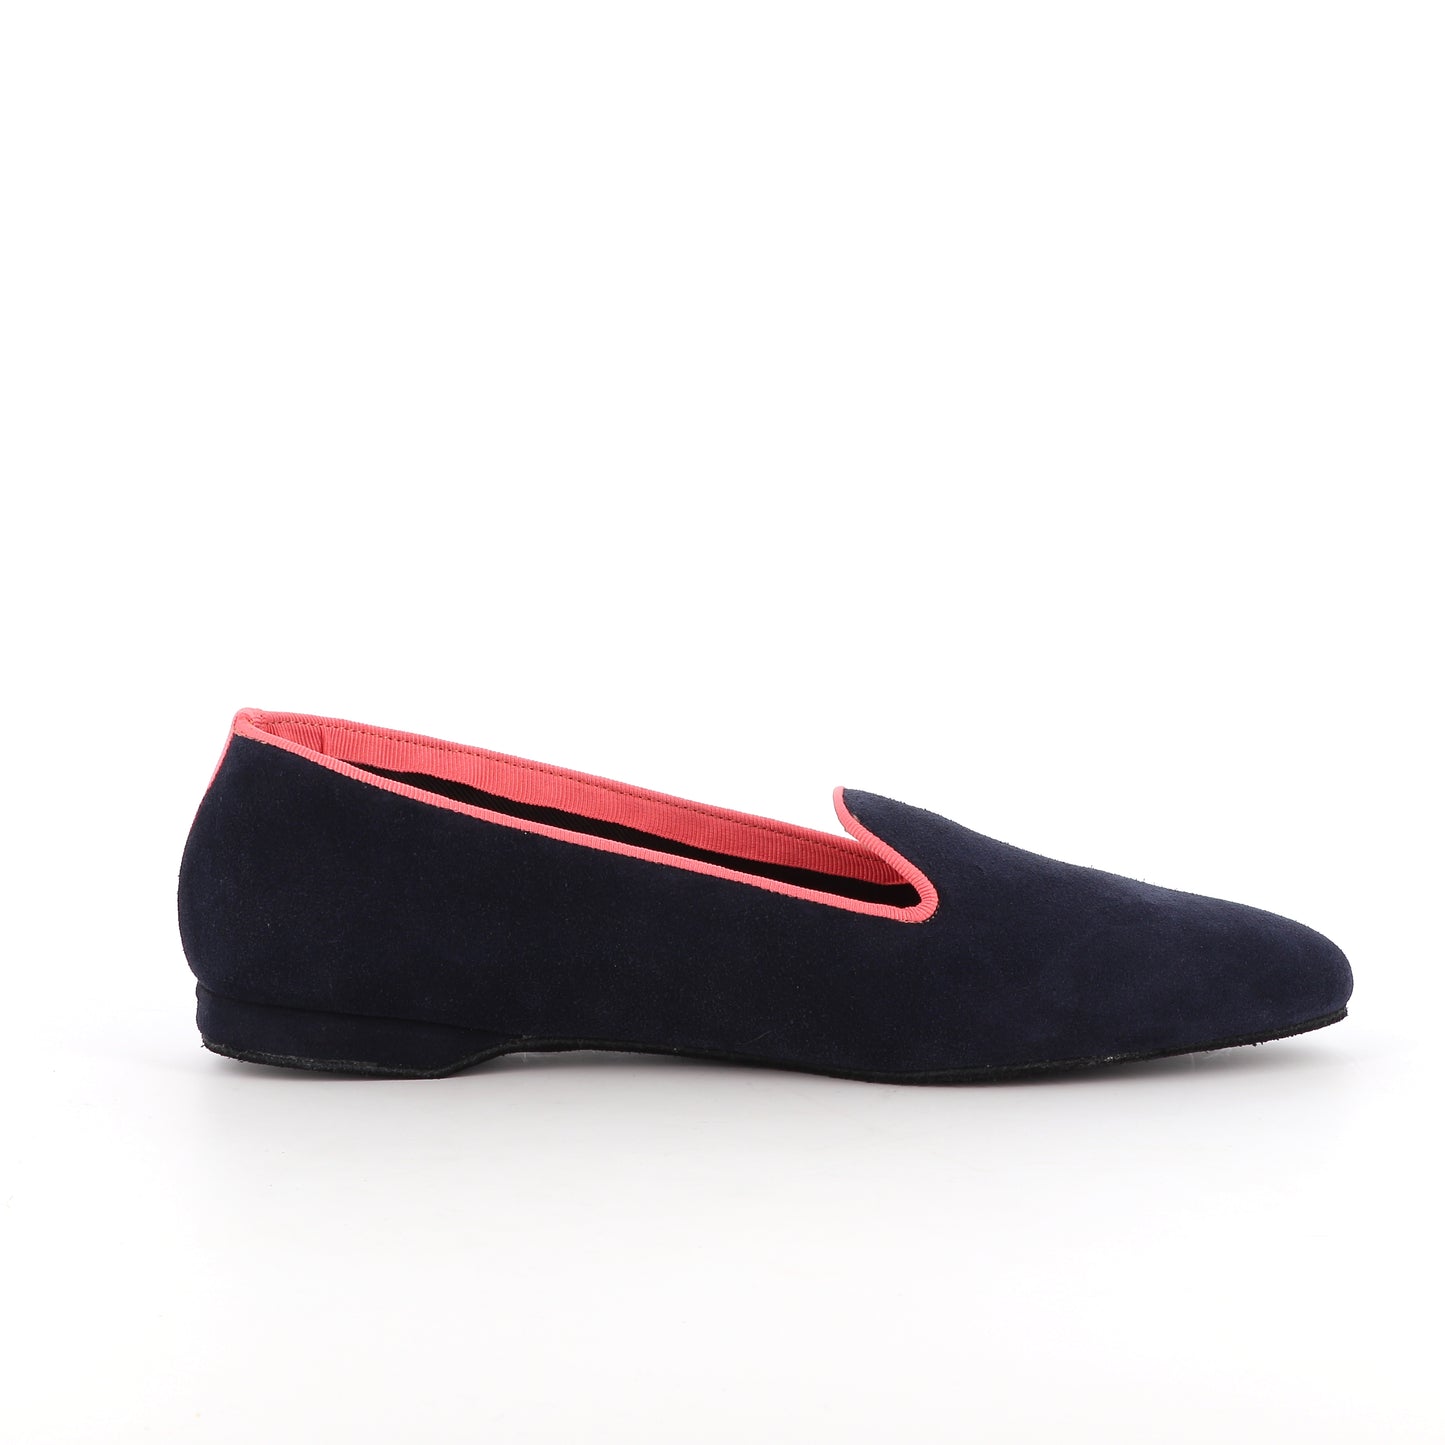 Slippers VOLUBILIS PARIS en cuir de couleur marine et fabriqués en France, pour allier confort et élégance à la maison.